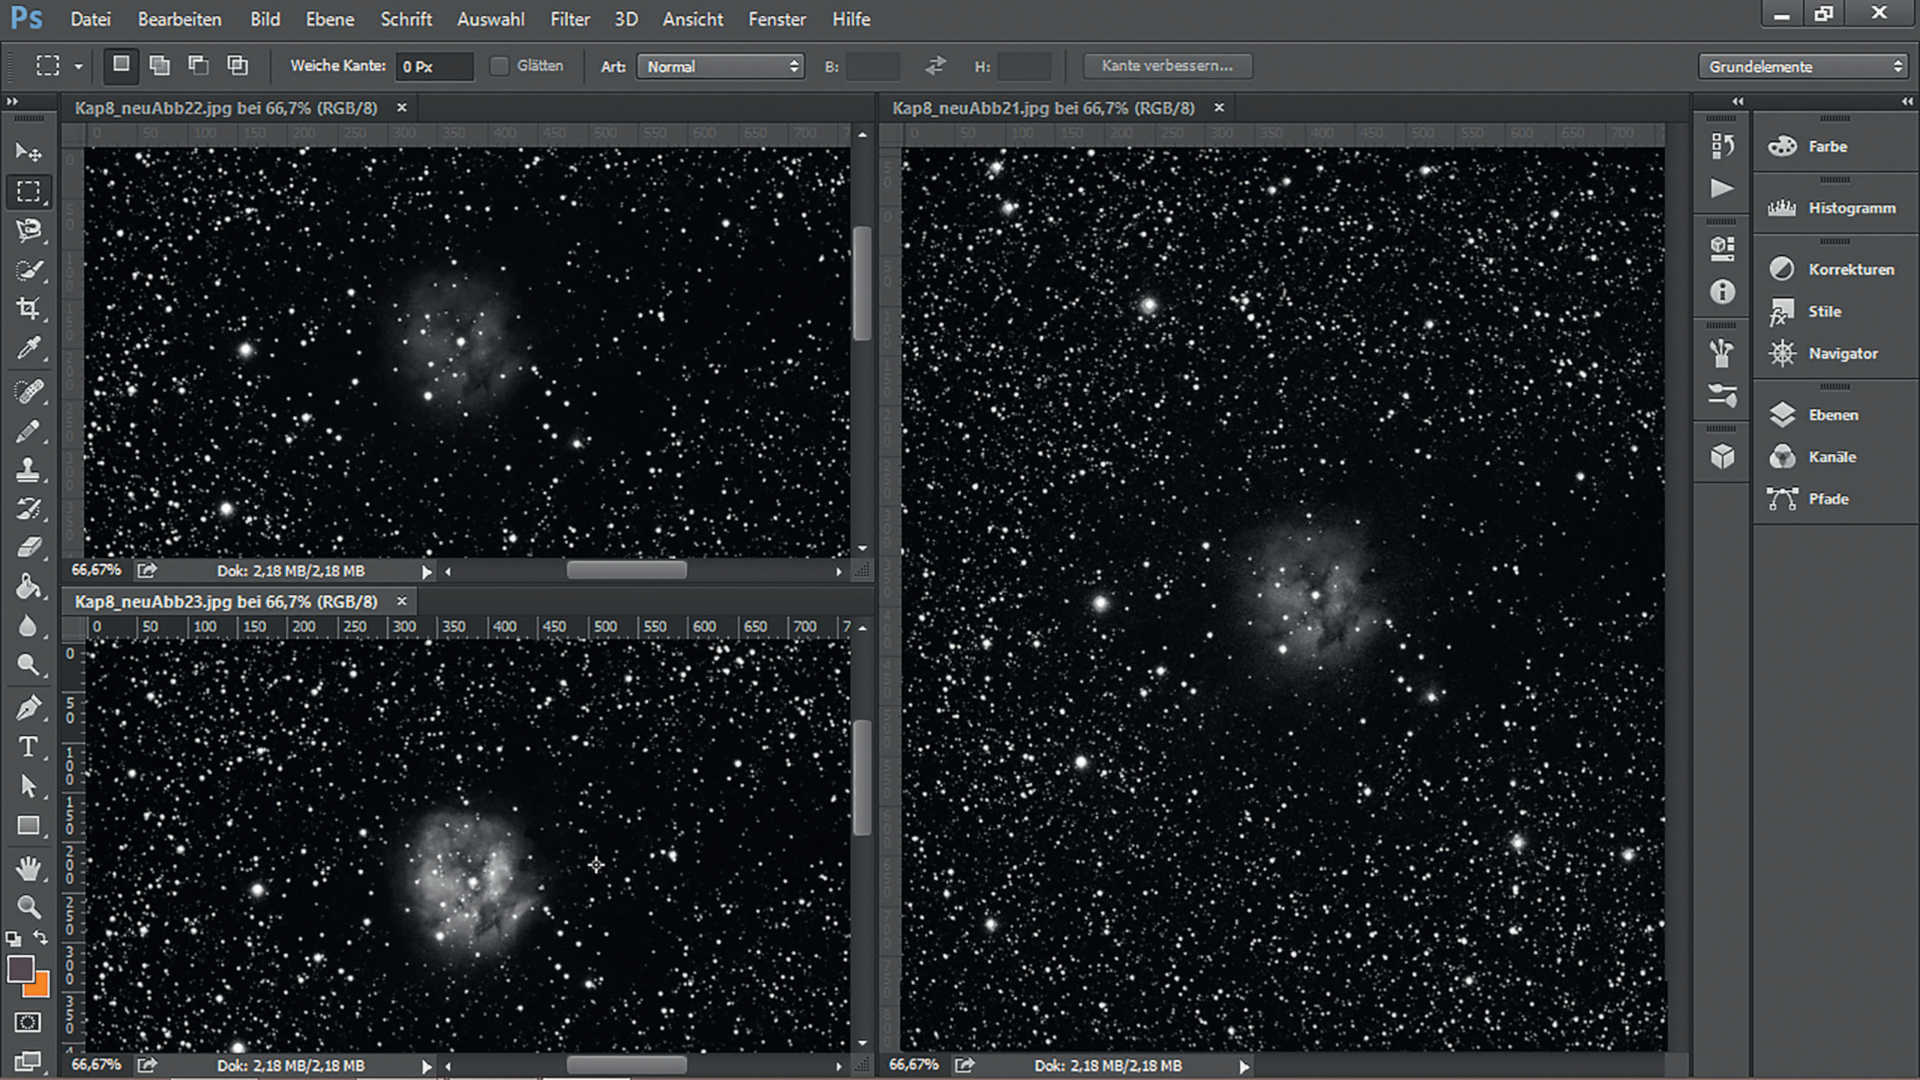 Zdjęcie mgławicy Kokon (IC 5146) w gwiazdozbiorze Łabędzia i geneza jego powstania: obraz sumaryczny składa się z ośmiu indywidualnych ekspozycji, każda z filtrem czerwonym, zielonym i niebieskim, wyrównanych, dodanych i wzmocnionych pod względem kontrastu. Kamera SBIG STF-8300 na astrografie 200/600 mm, całkowity czas naświetlania: 72 minuty, filtry RGB. U. Dittler